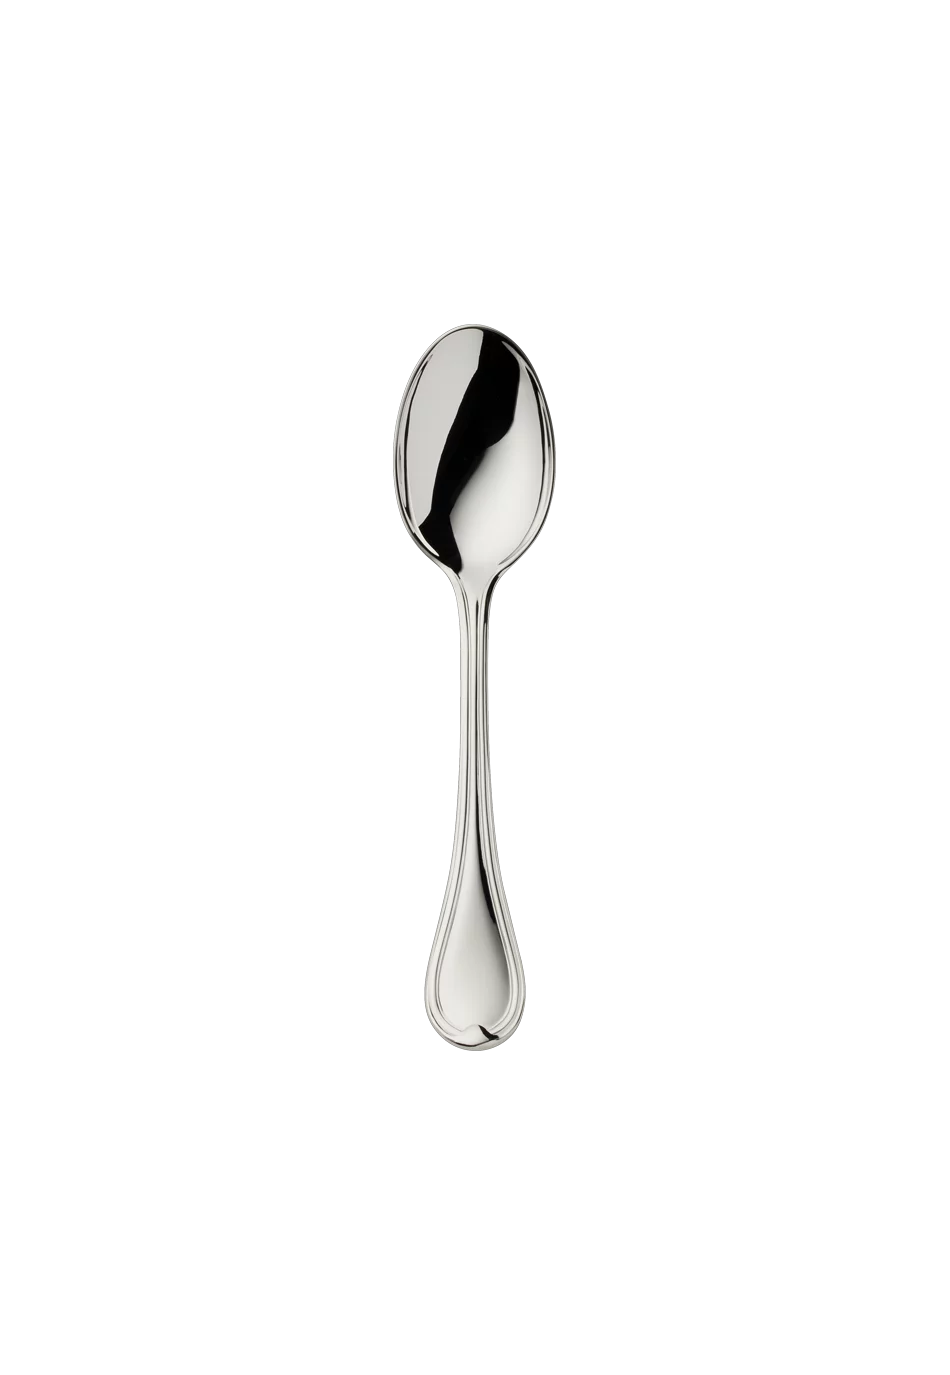 Classic-Faden Children's Spoon (150g massive silverplated)